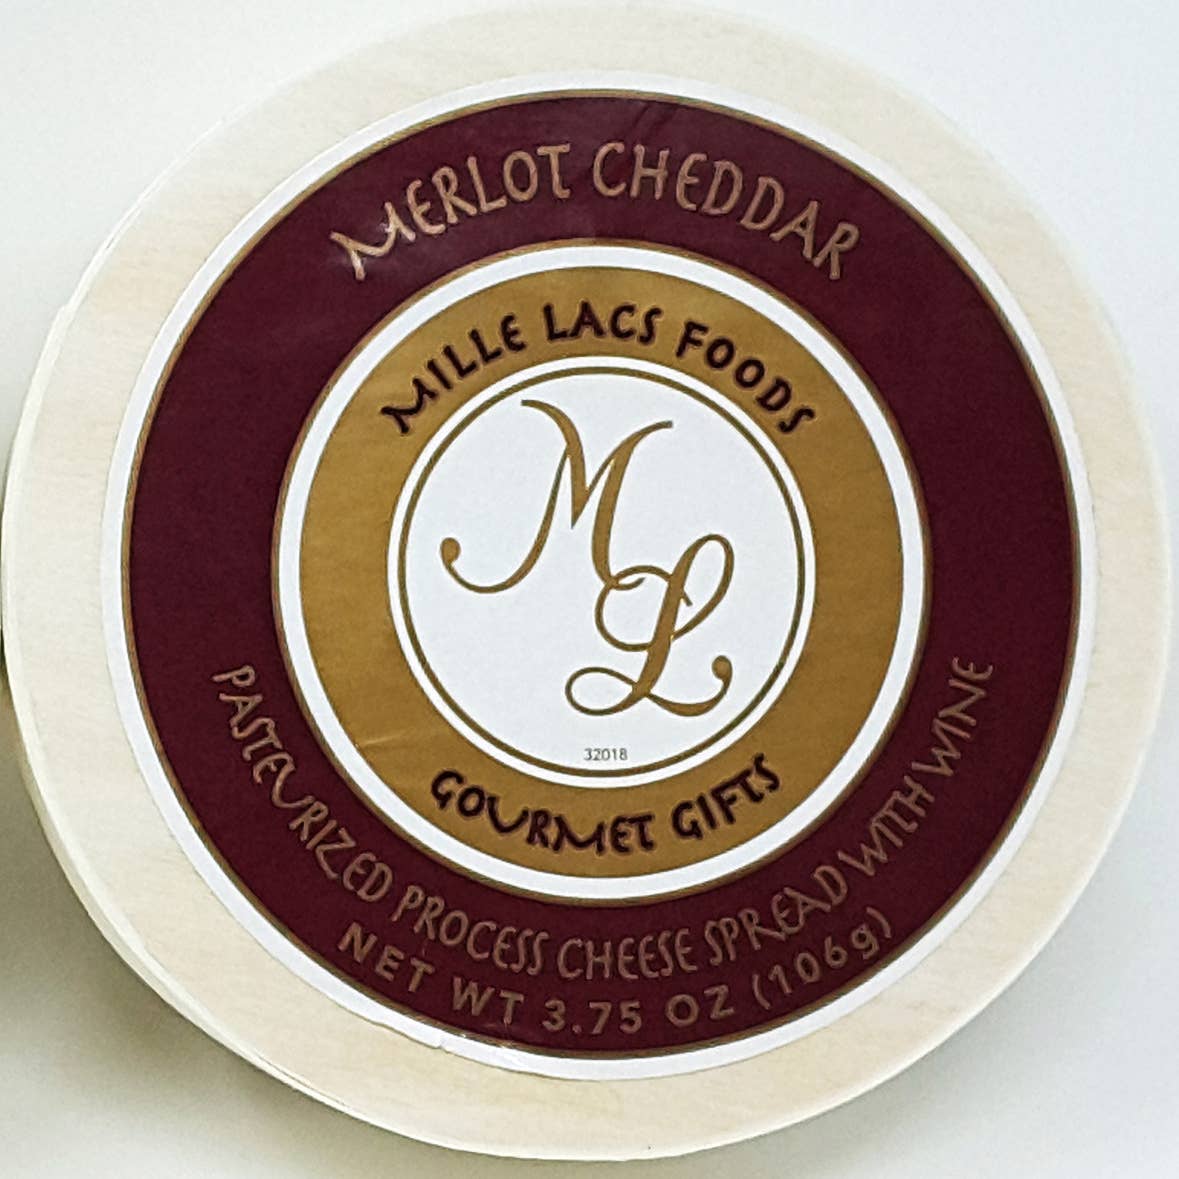 Merlot Cheddar Wine Cheese Spread